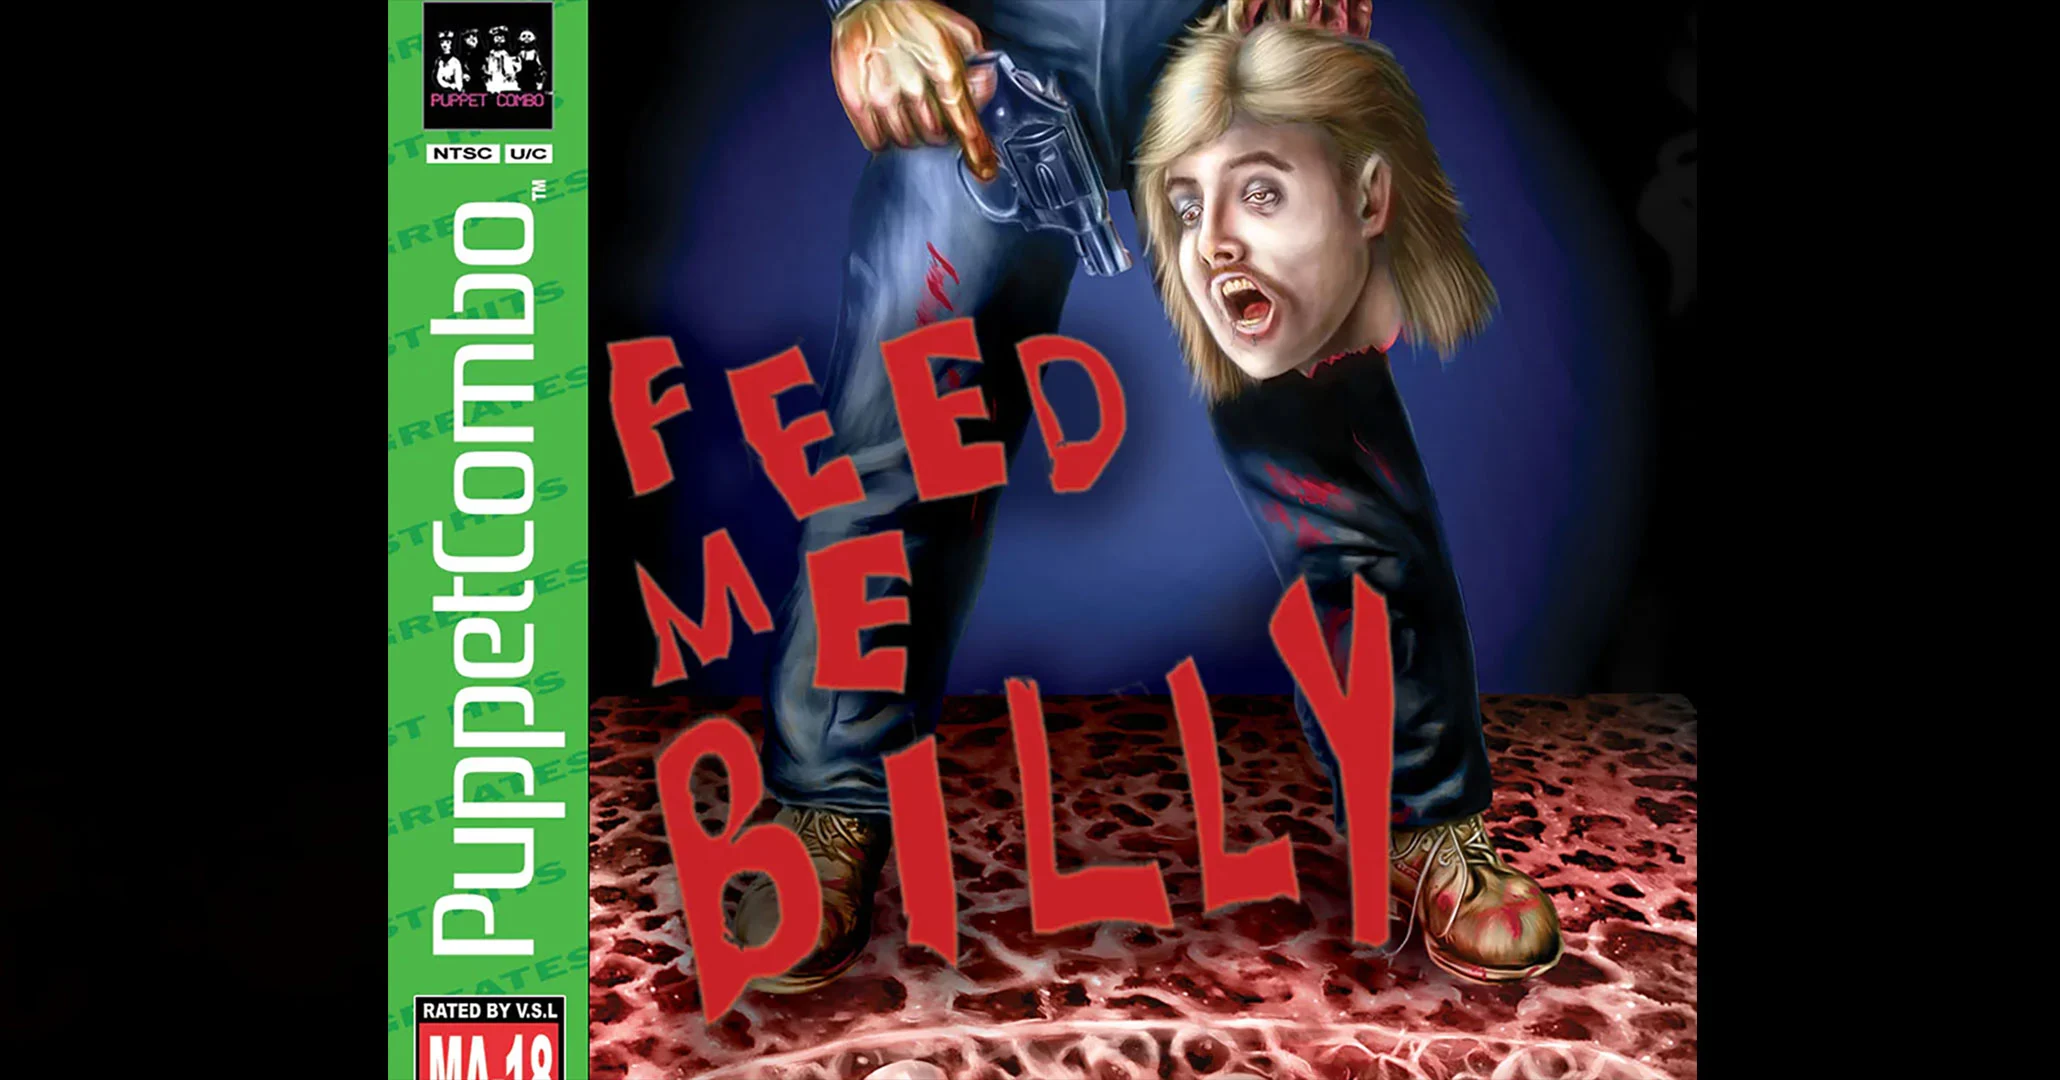 Best Short Indie Horror Games - Feed Me Billy